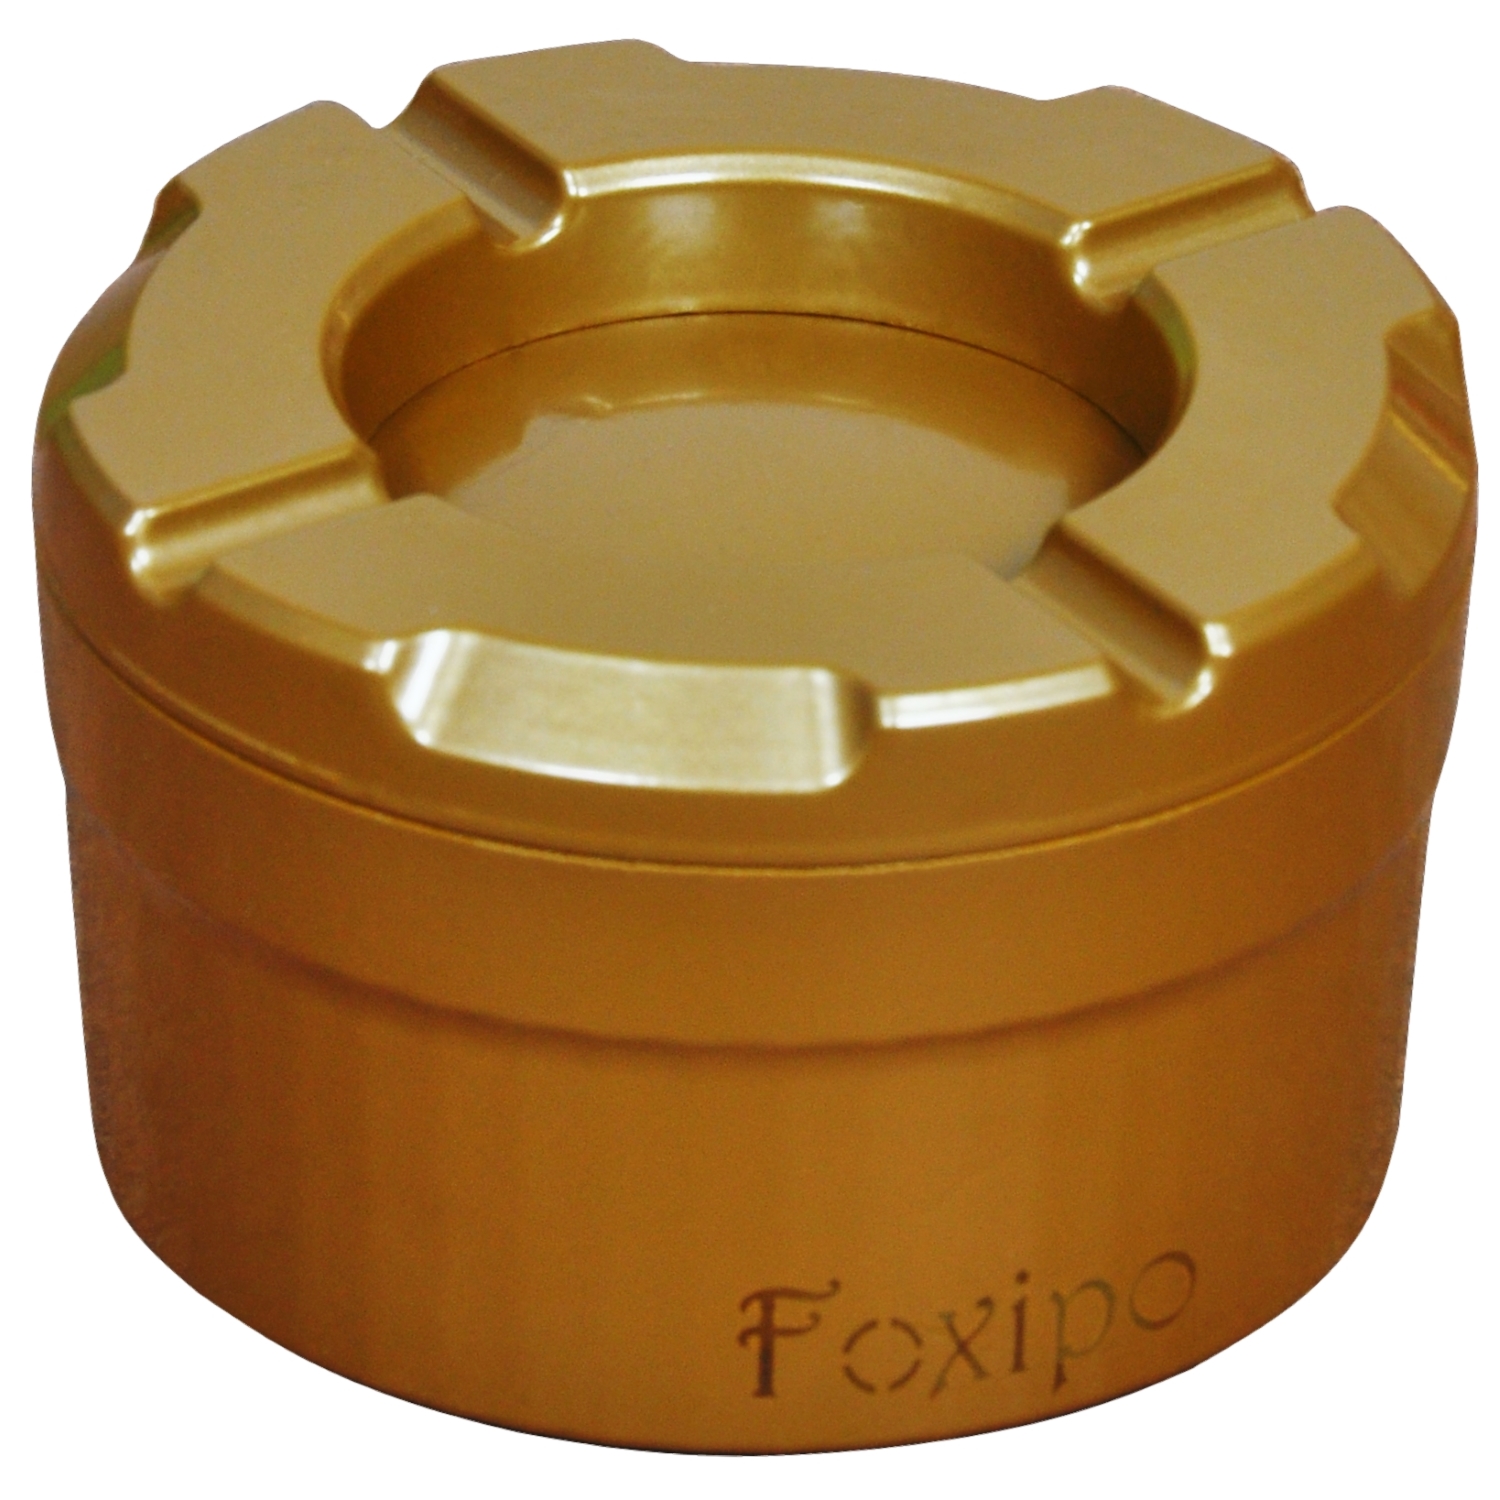 Foxipo Döner Kül Tablası / Küllük - Altın Rengi Köşeli Model